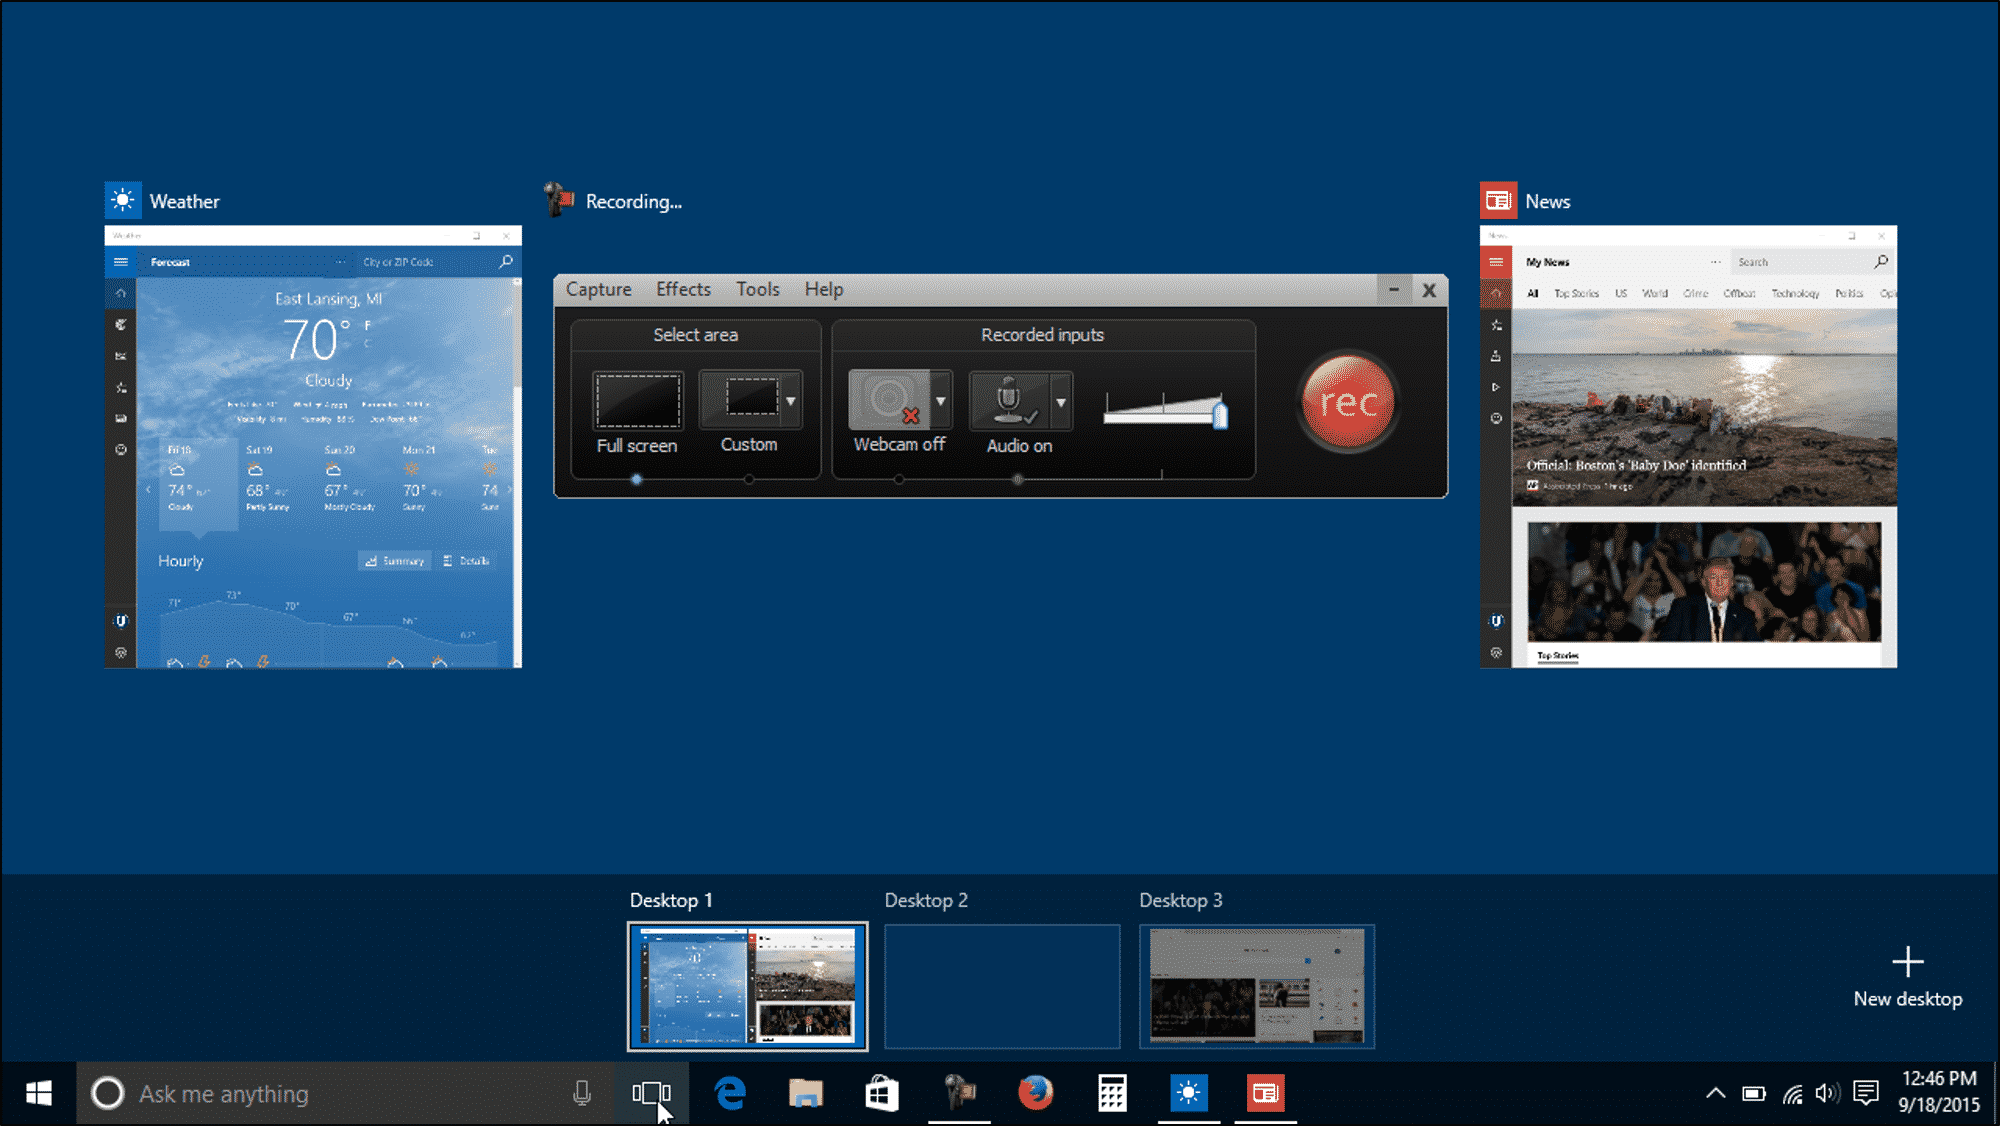 download windows virtual desktop client